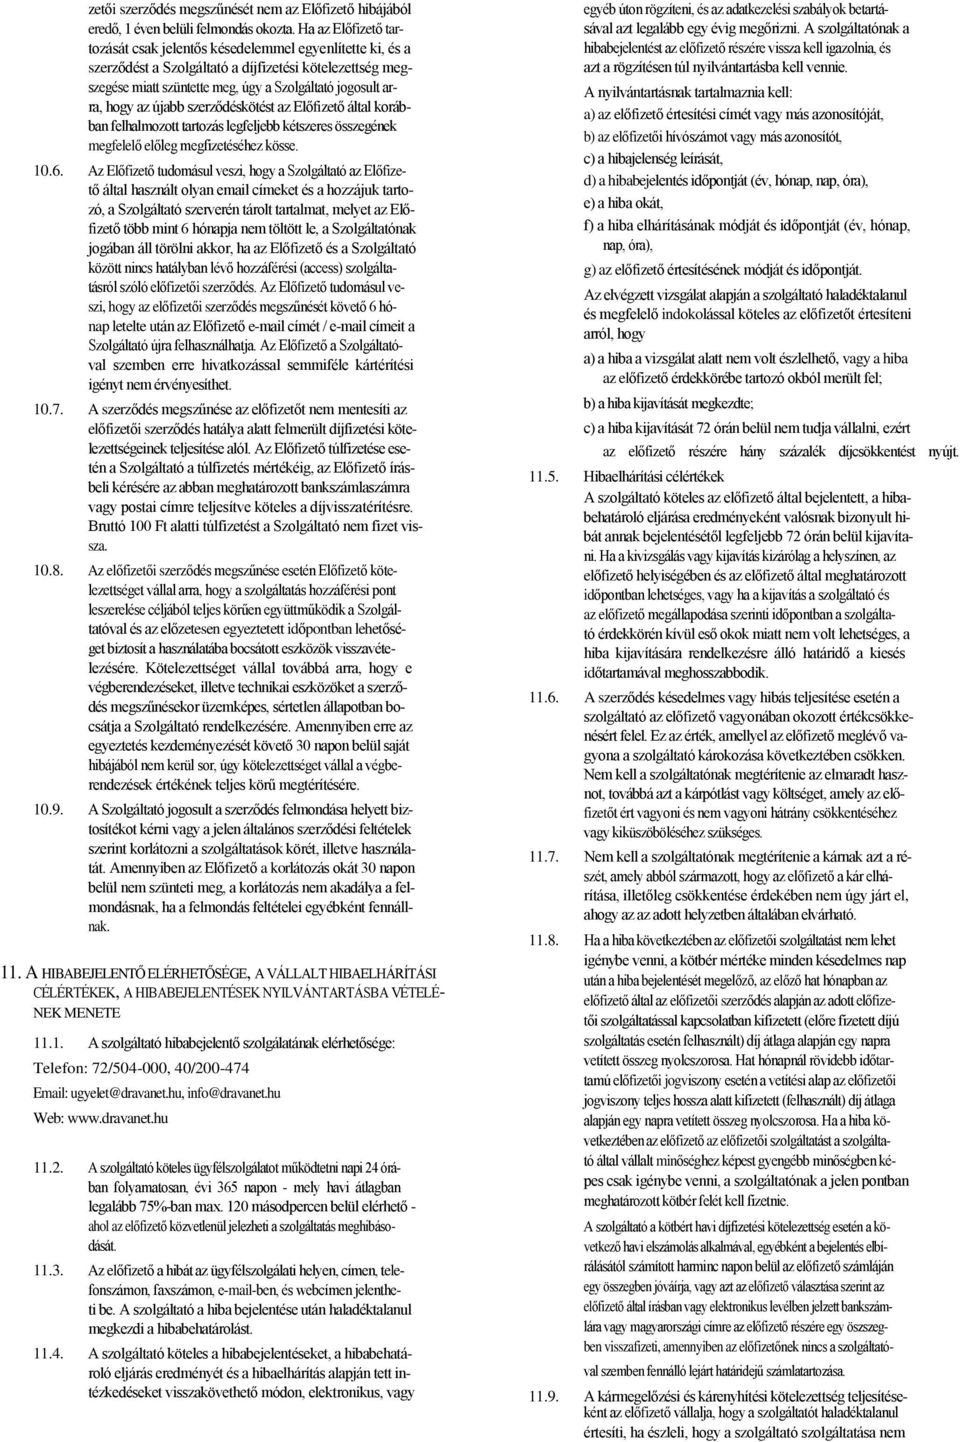 Általános szerződési feltételek (Drávanet Zrt.) - PDF Free Download